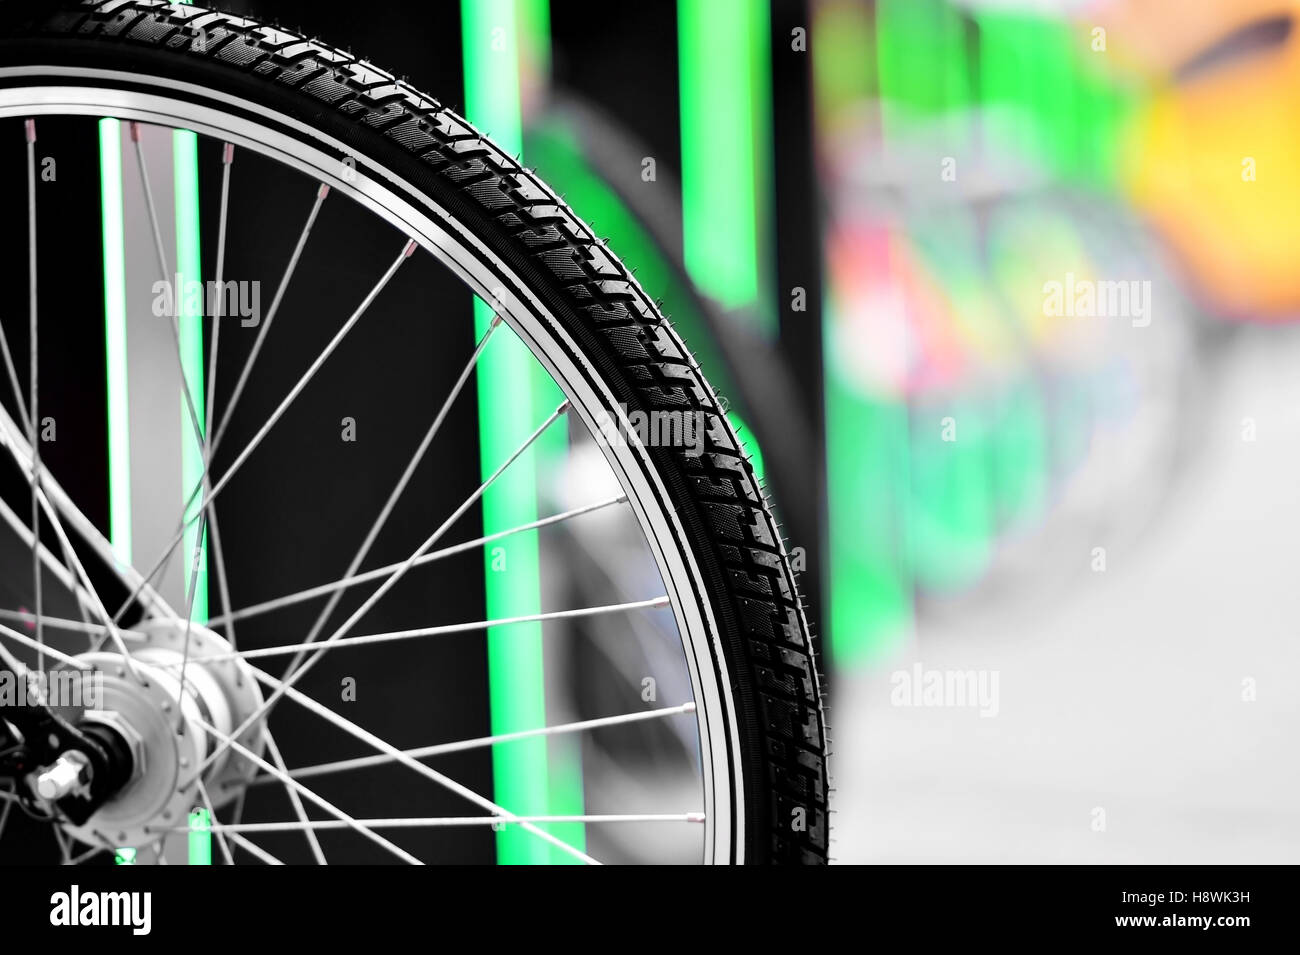 Urban bicycle sharing system wheel detail Stock Photo